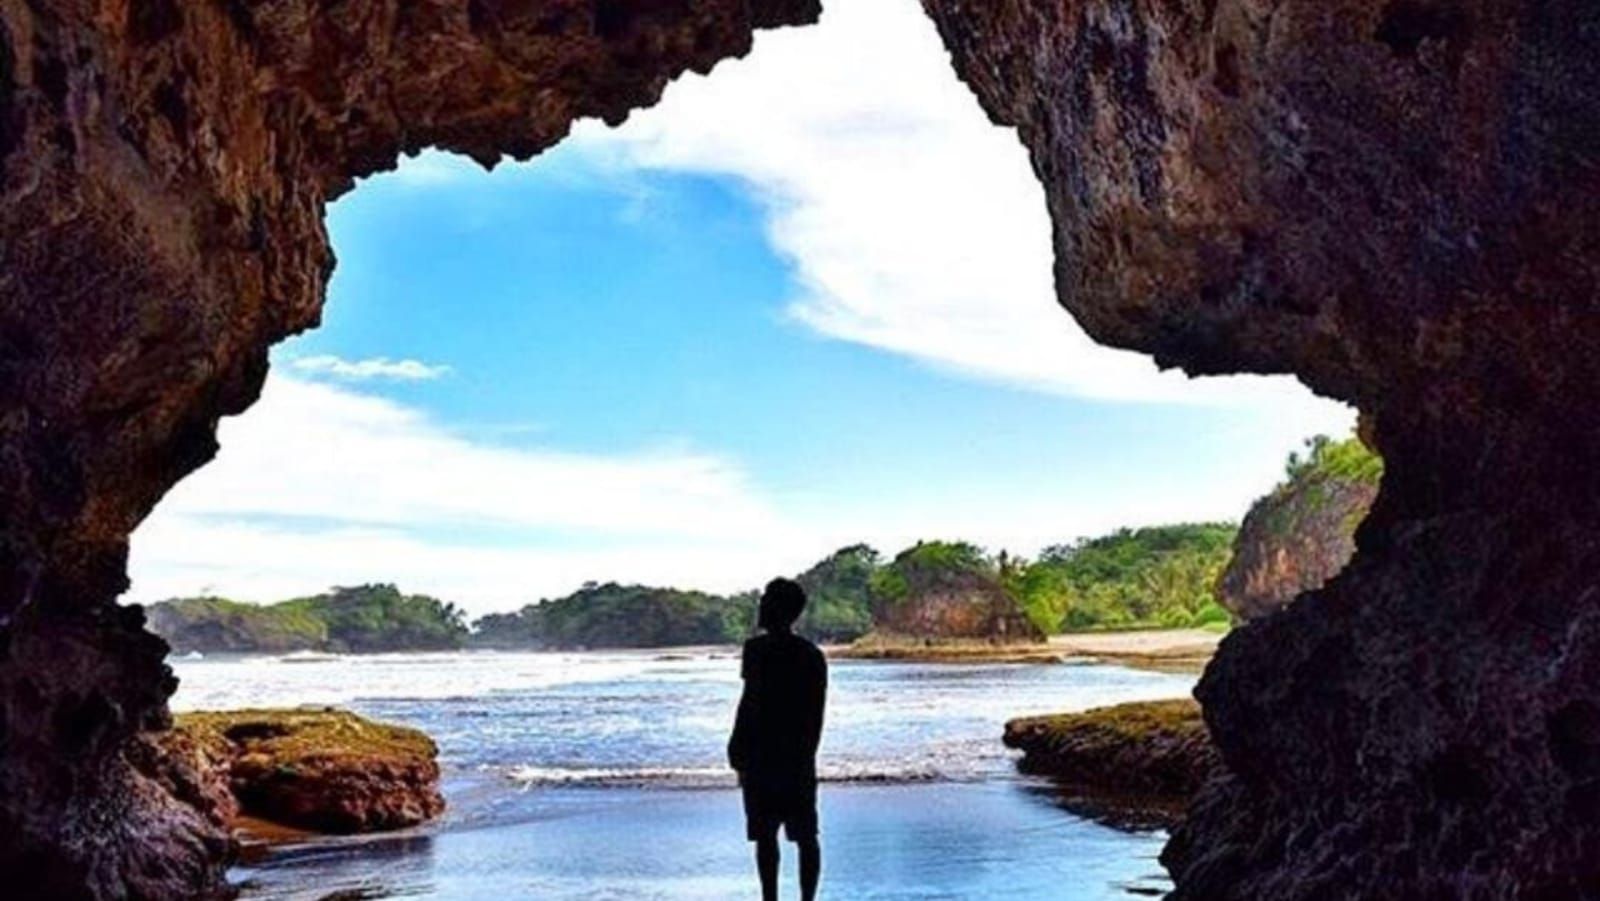 Gua, salah satu spot foto indah yang bisa diambil saat berkunjung ke Pantai Madasari Pangandaran